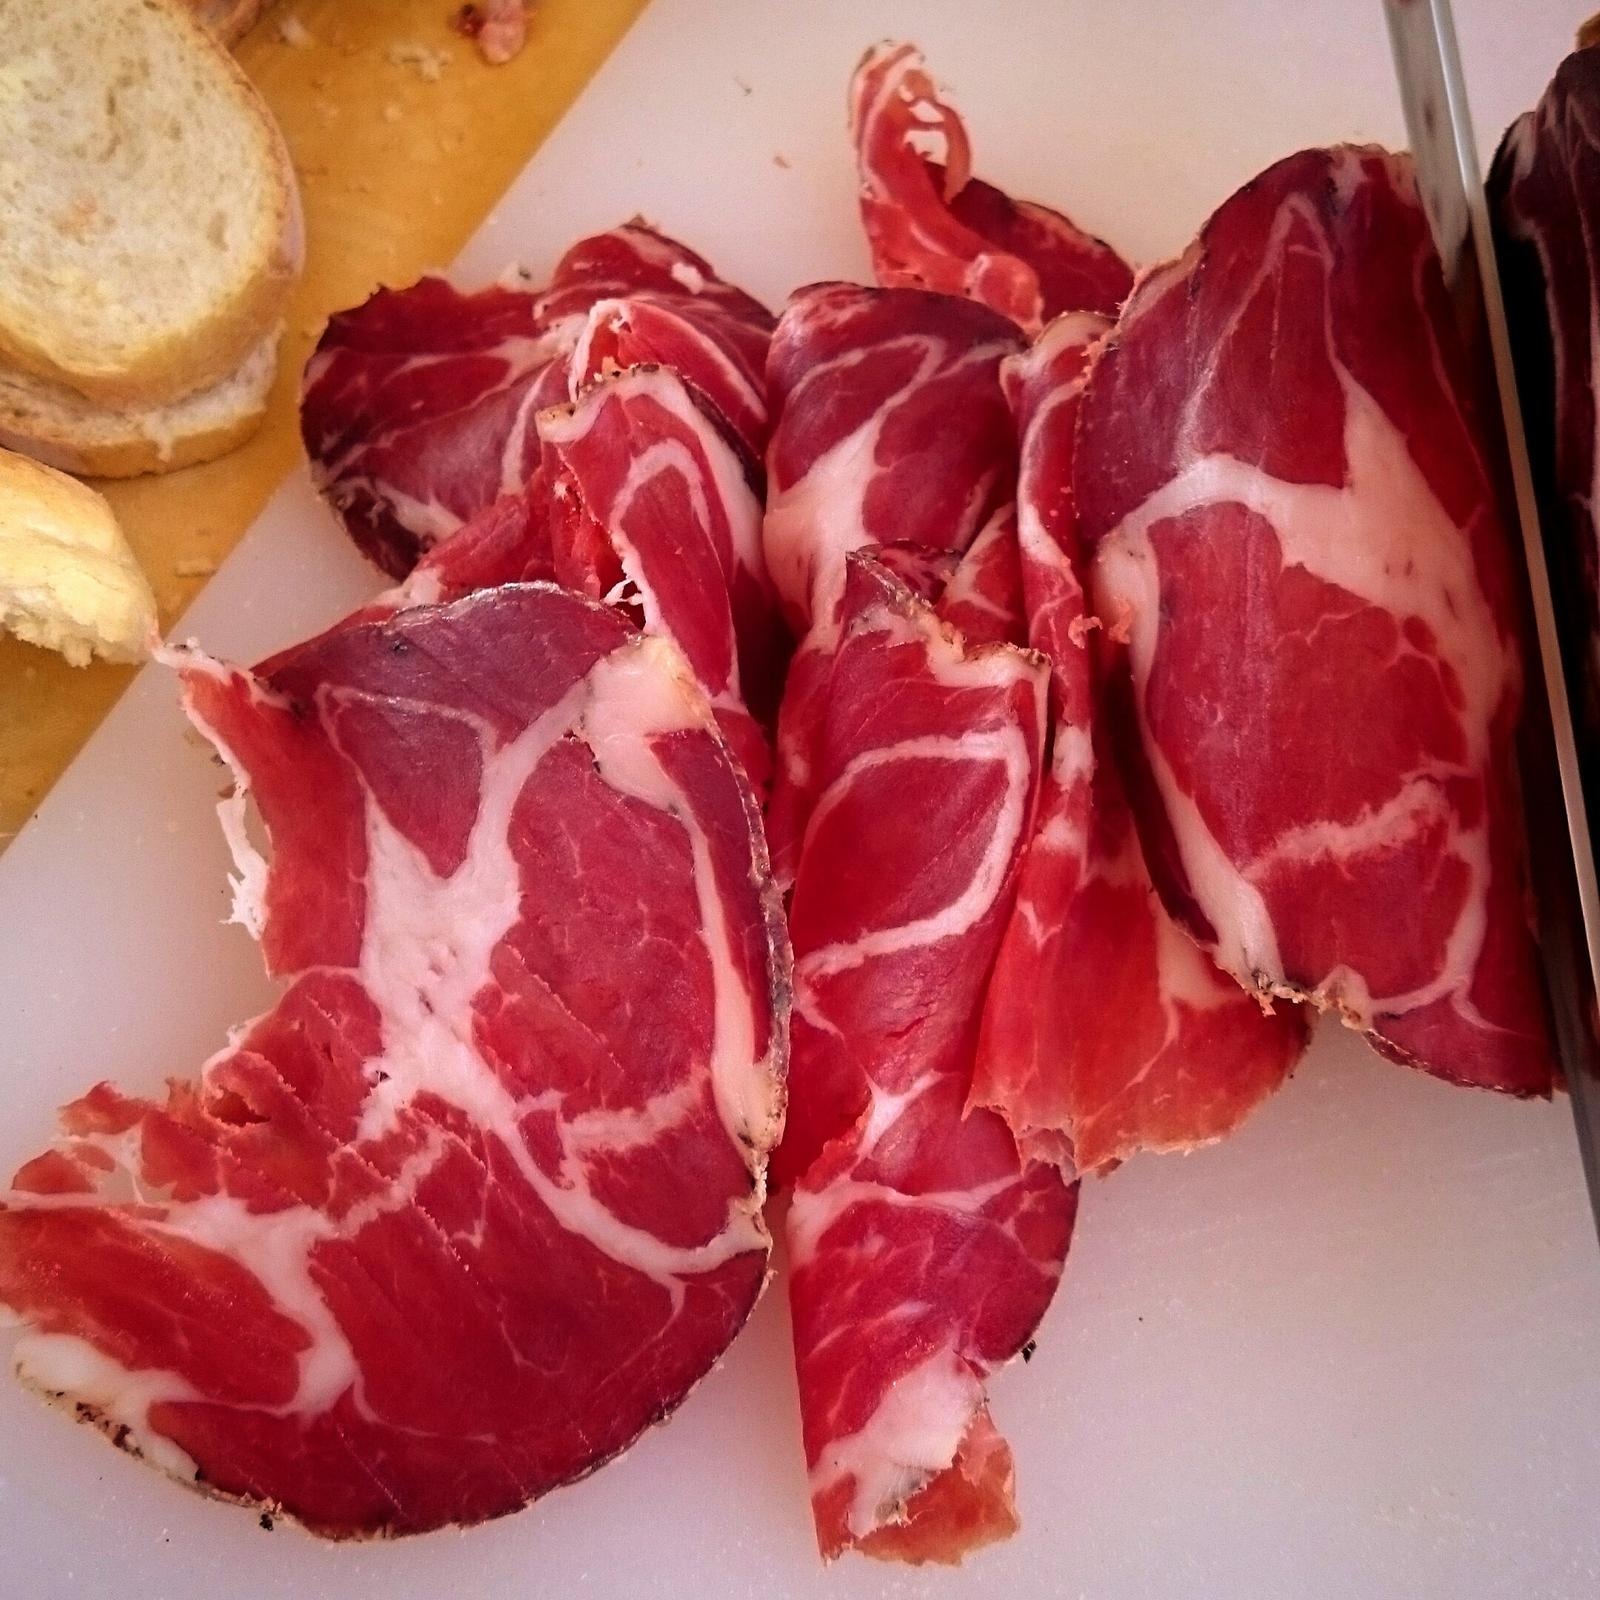 الإكثار من اللحوم -وخاصة الحمراء- يزيد من خطر الإصابة بسرطان الأمعاء (غيتي)